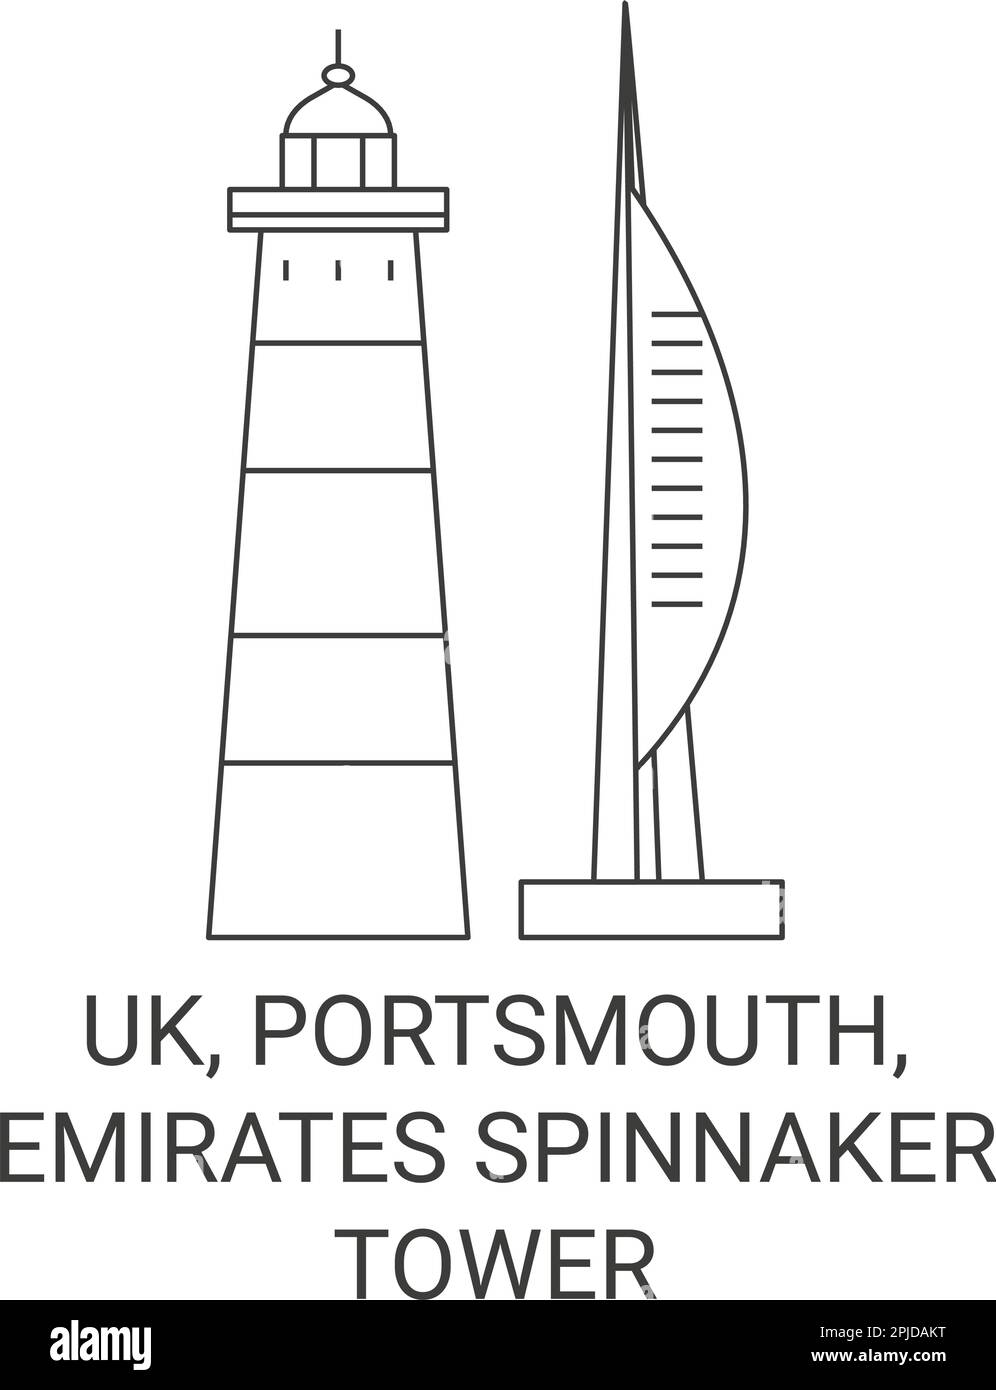 England, Portsmouth, Emirates Spinnaker Tower travel landmark vector illustration Stock Vector